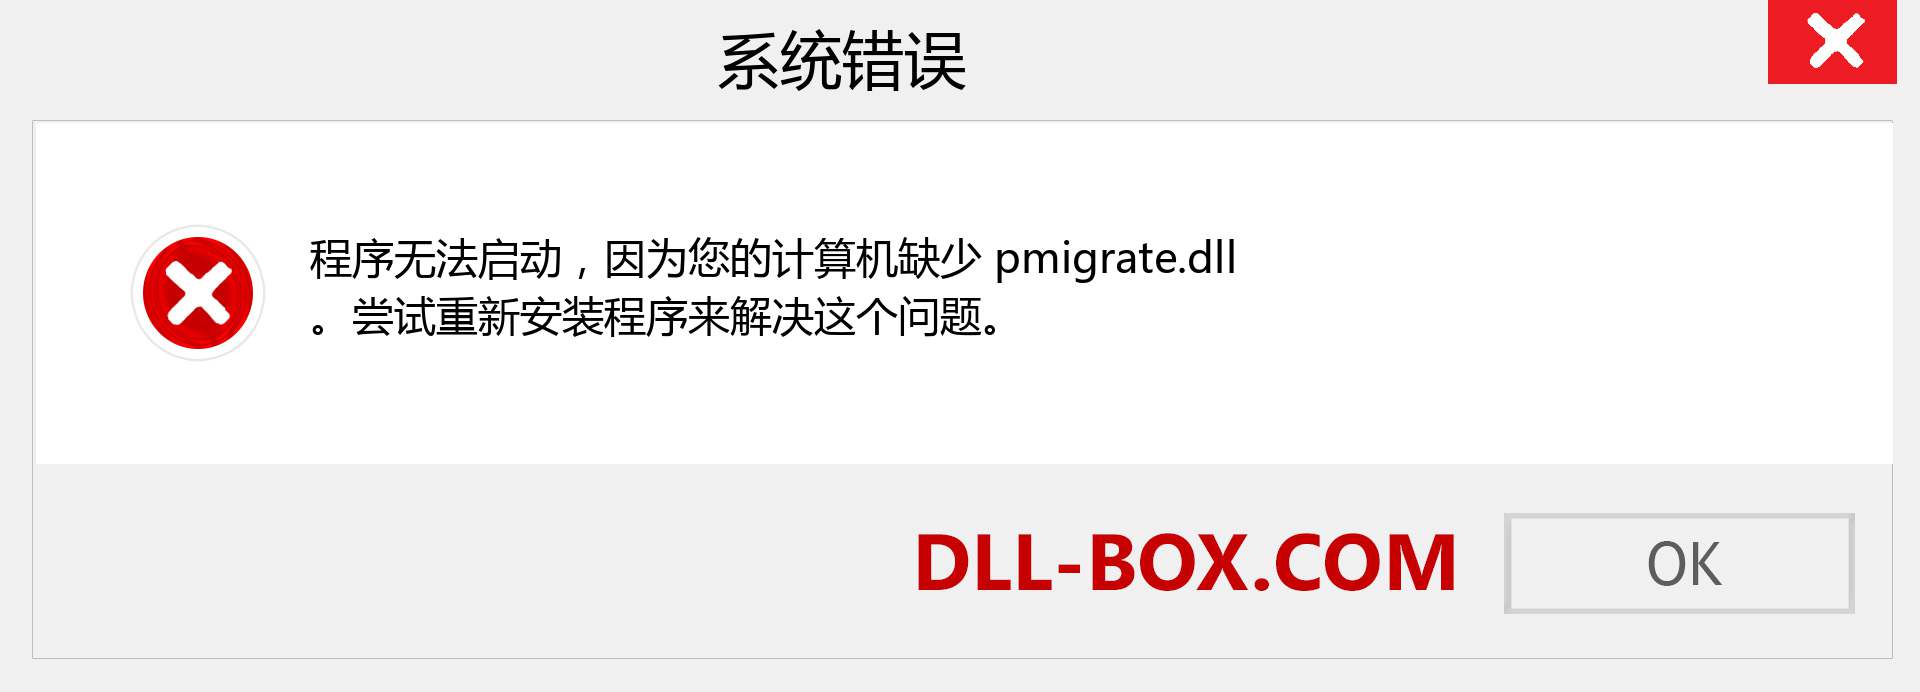 pmigrate.dll 文件丢失？。 适用于 Windows 7、8、10 的下载 - 修复 Windows、照片、图像上的 pmigrate dll 丢失错误